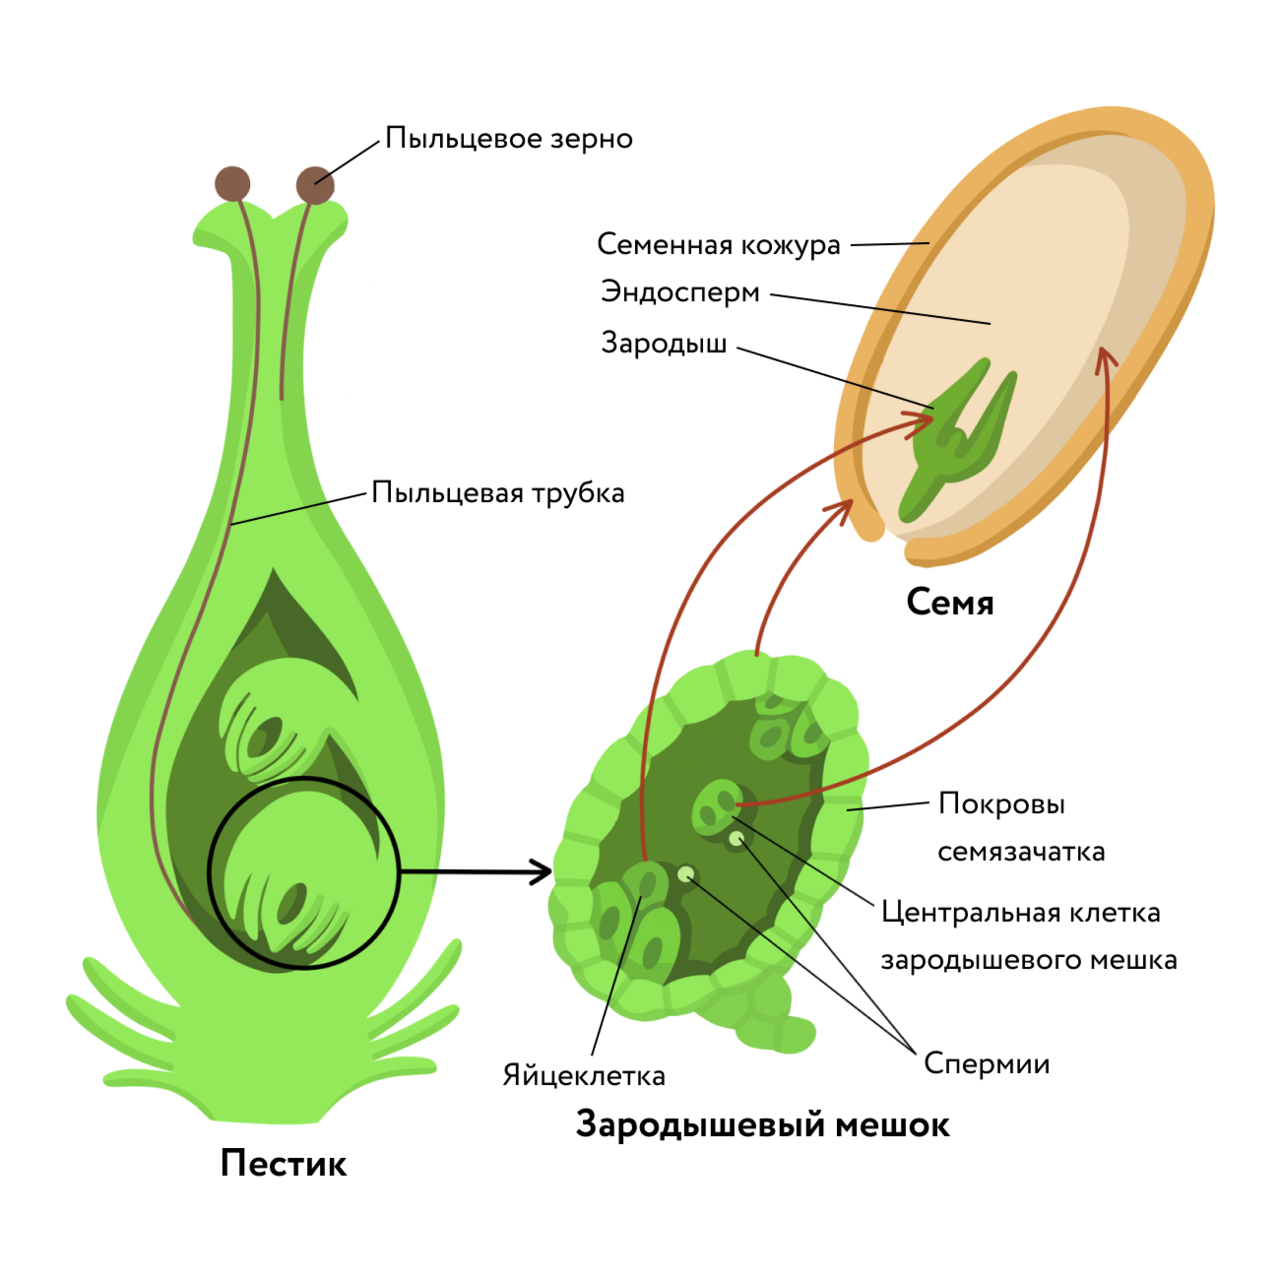 Как называют данный процесс пыльцевая трубка спермии. Зародышевый мешок покрытосеменных растений. Двойное оплодотворение у покрытосеменных схема. Строение семязачатка цветковых растений. Строение зародышевого мешка у покрытосеменных.